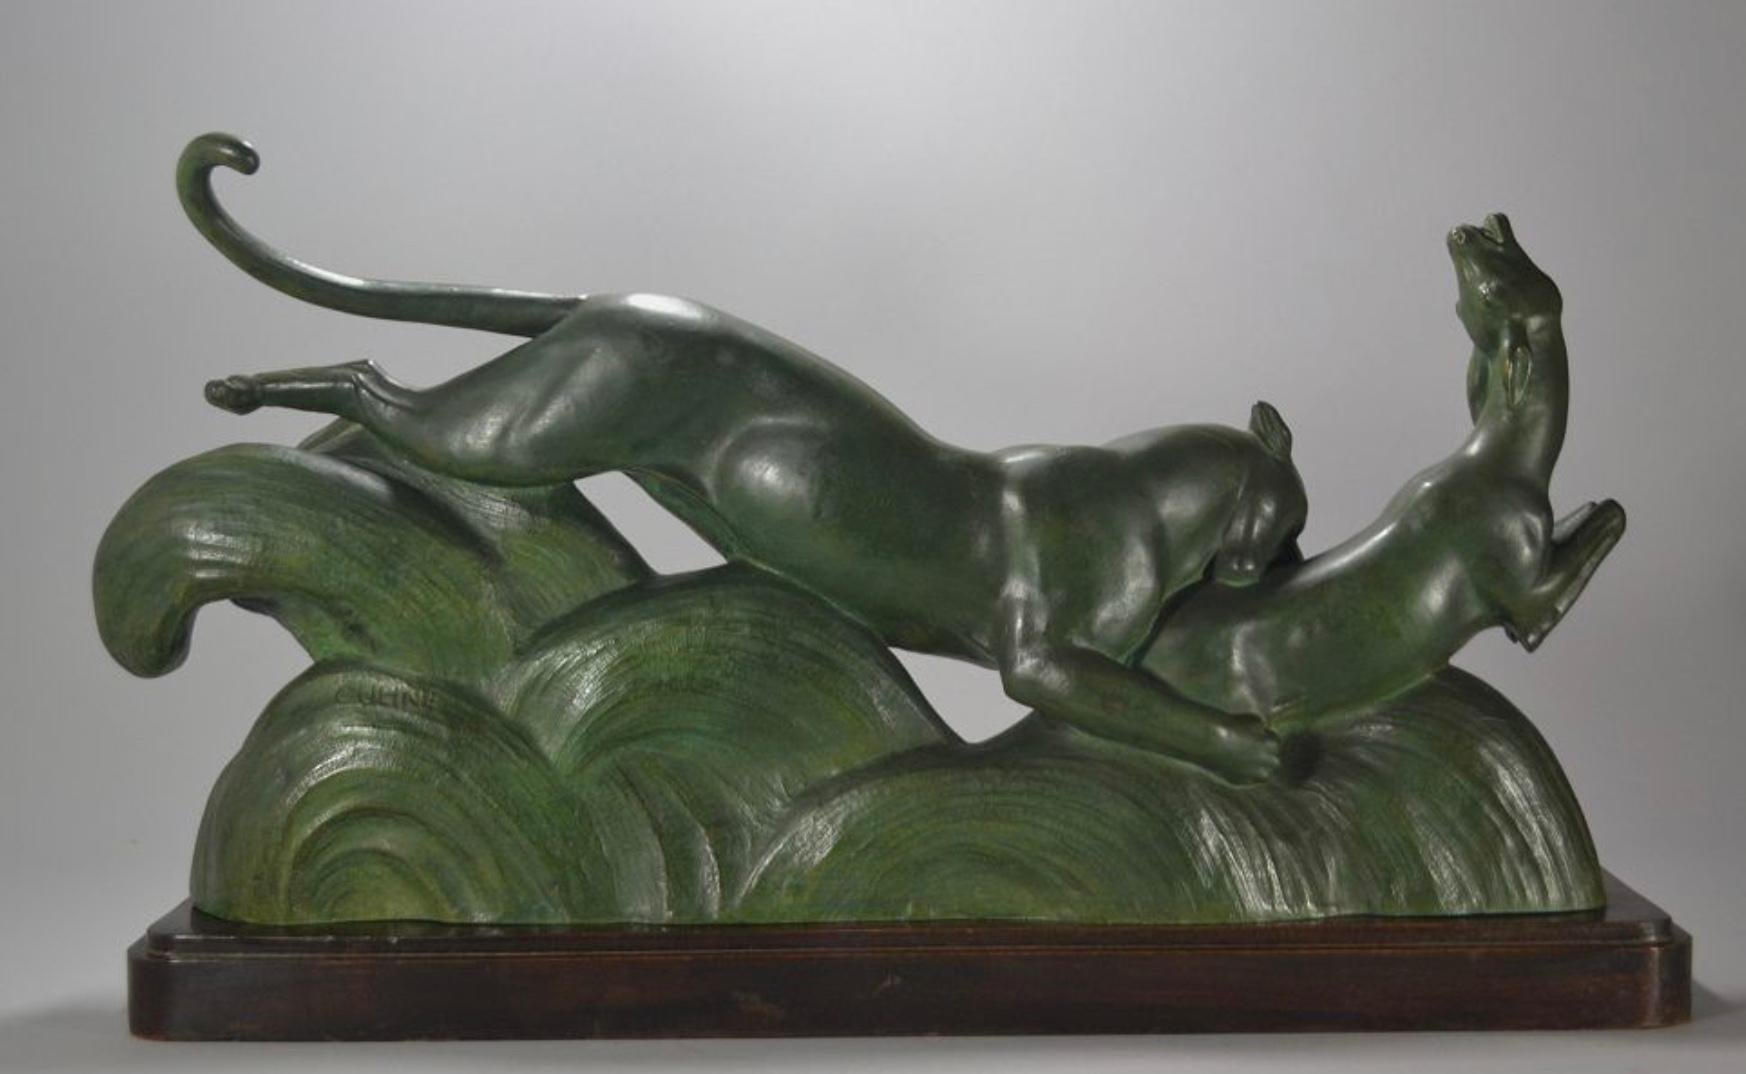 Sculpture française Art déco en bronze représentant une panthère et une gazelle par Alexander Ouline. Elle représente des animaux en action, une sorte de sol forestier abstrait en bronze, le tout monté sur une base en bois. Ouline était un artiste